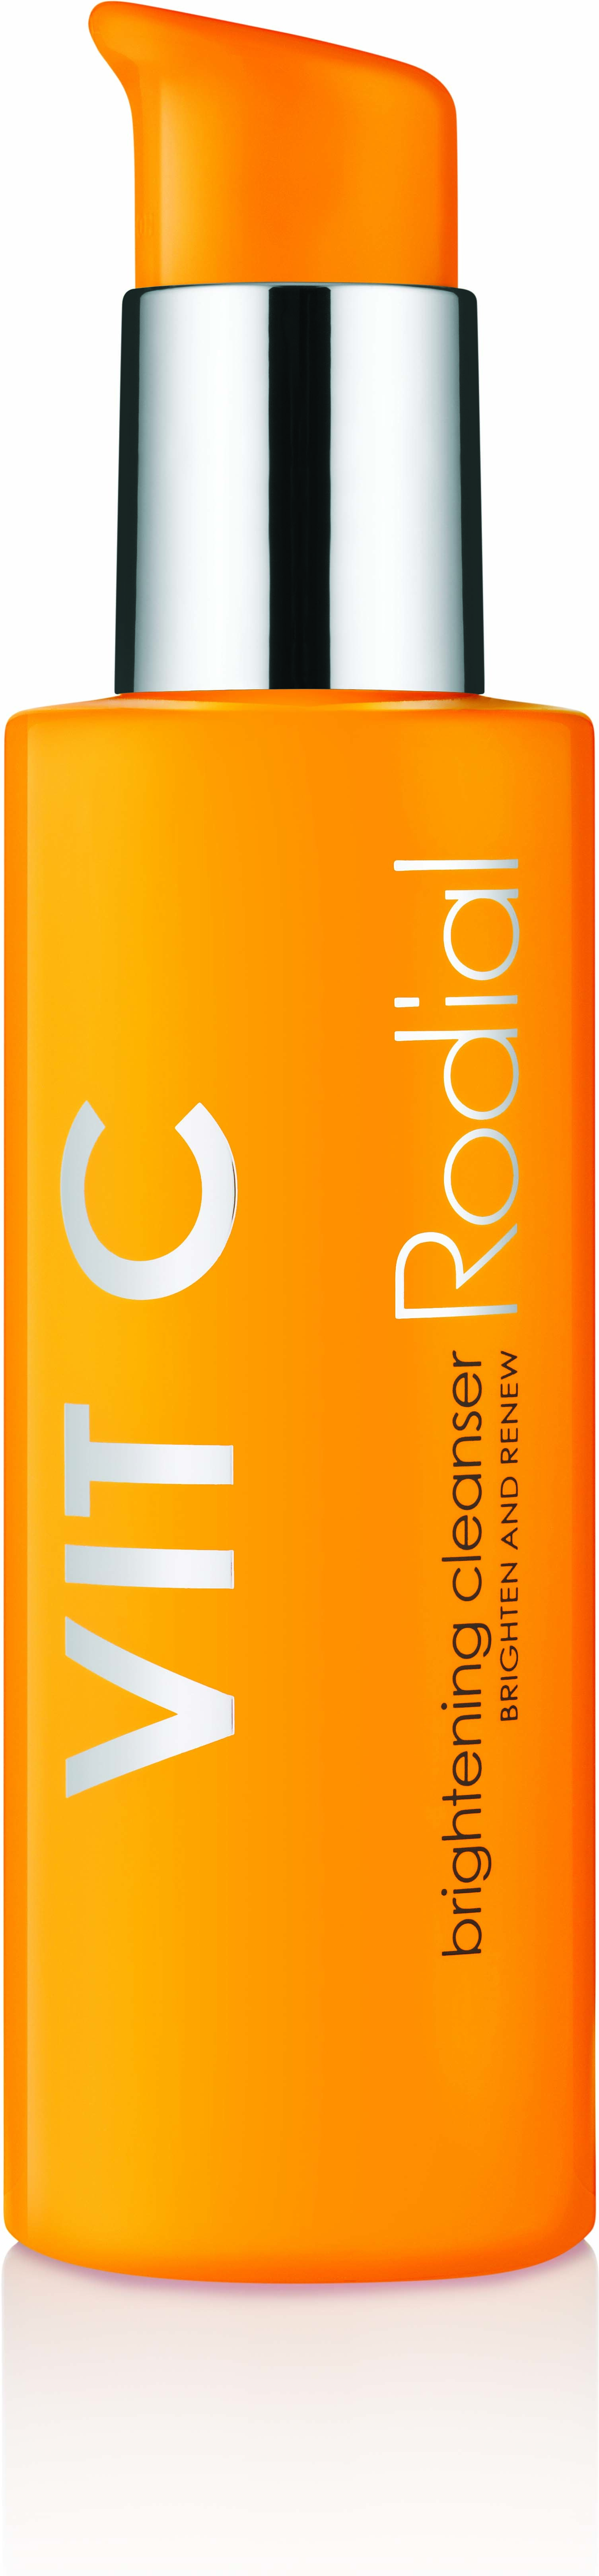 Rodial Vitamin C Brightening Cleanser 135 ml